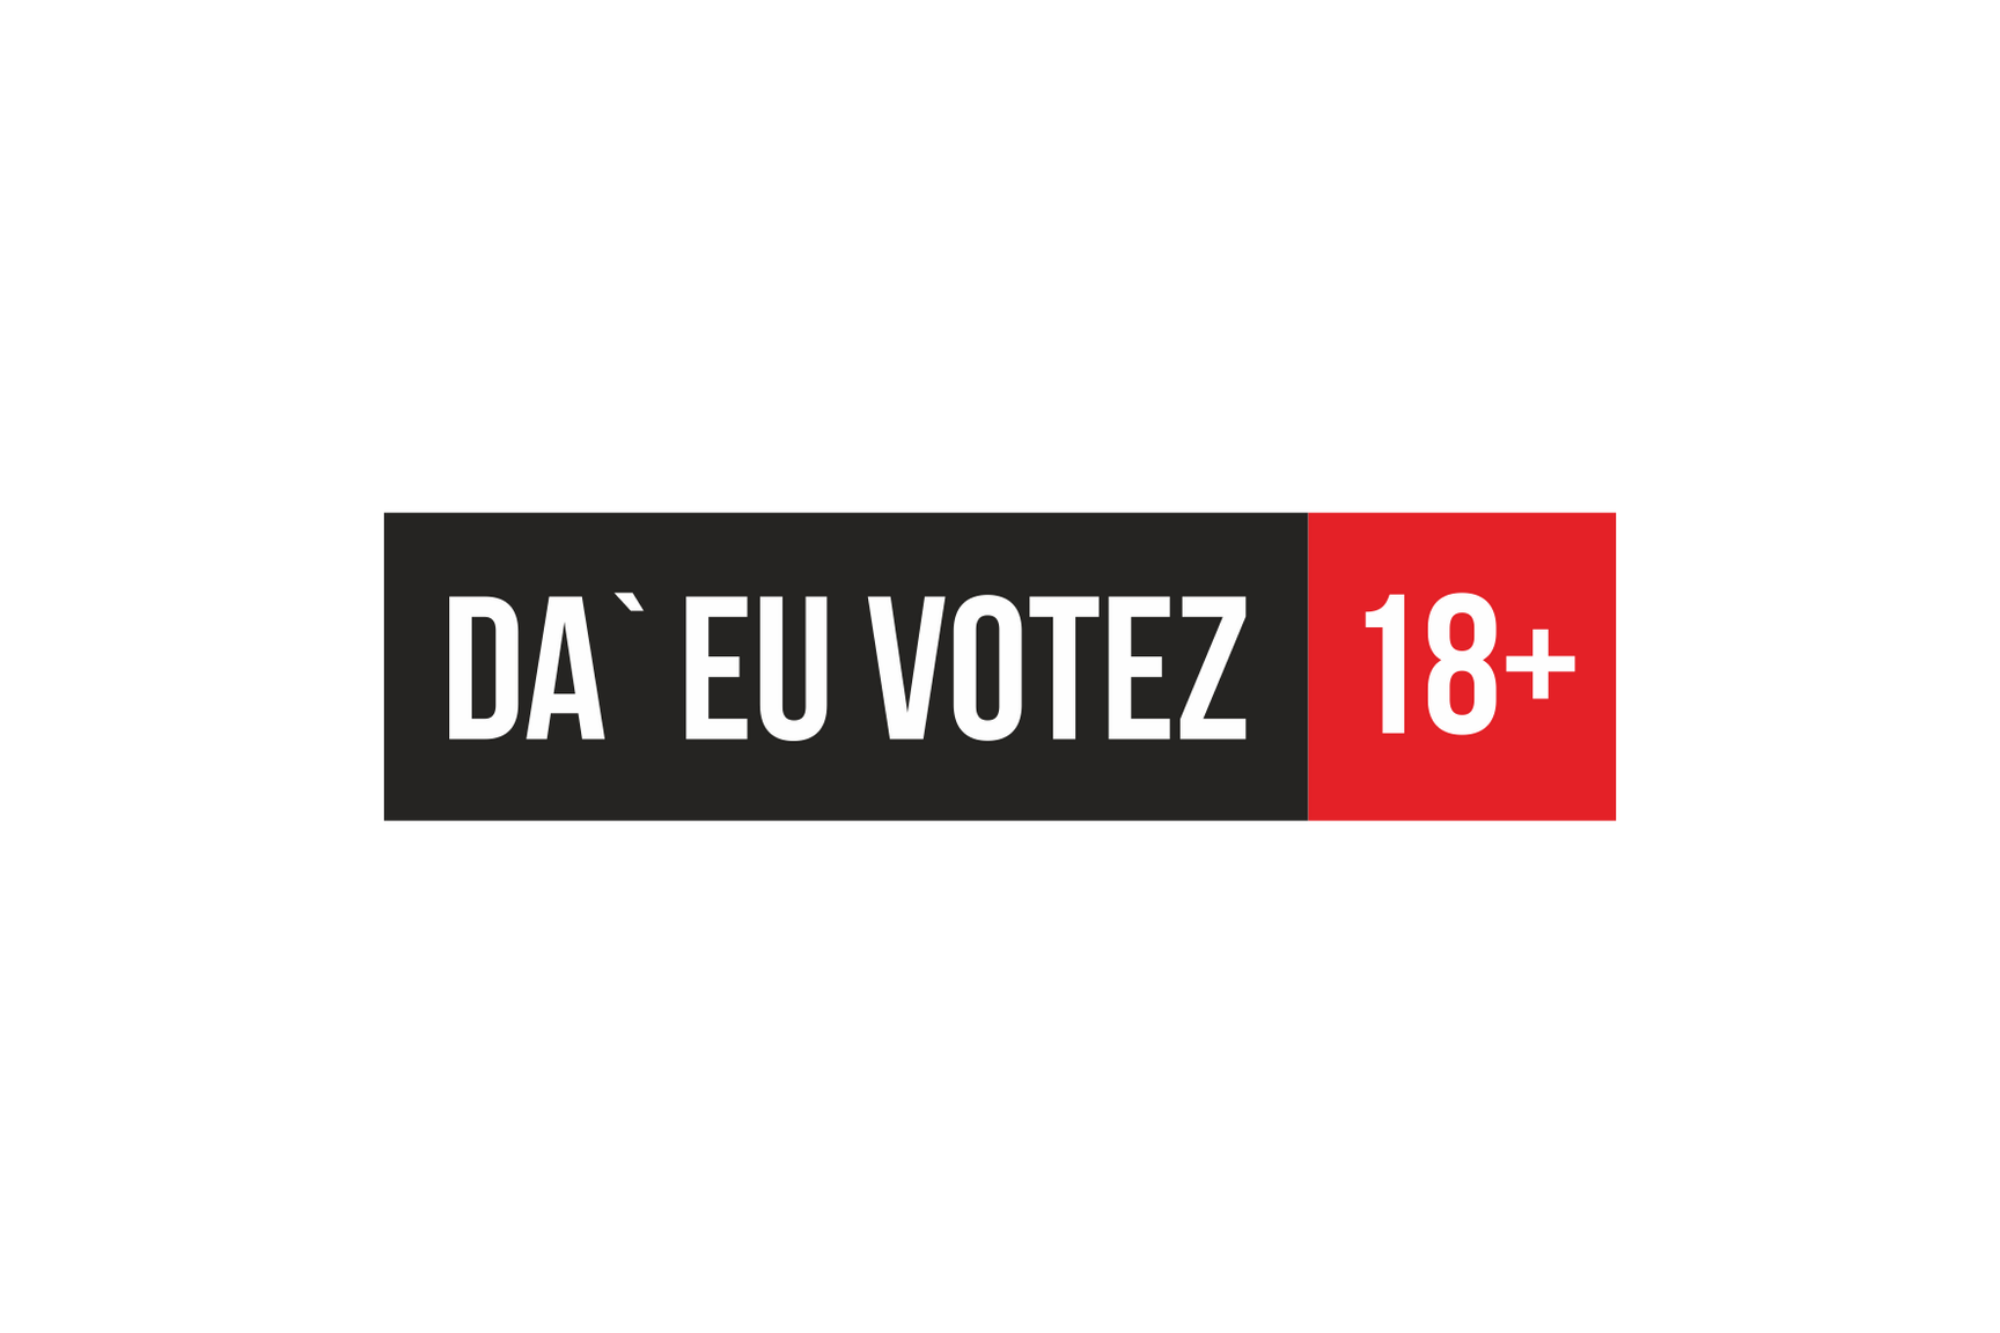 Гражданская кампания: "А я голосую", 2014 г.